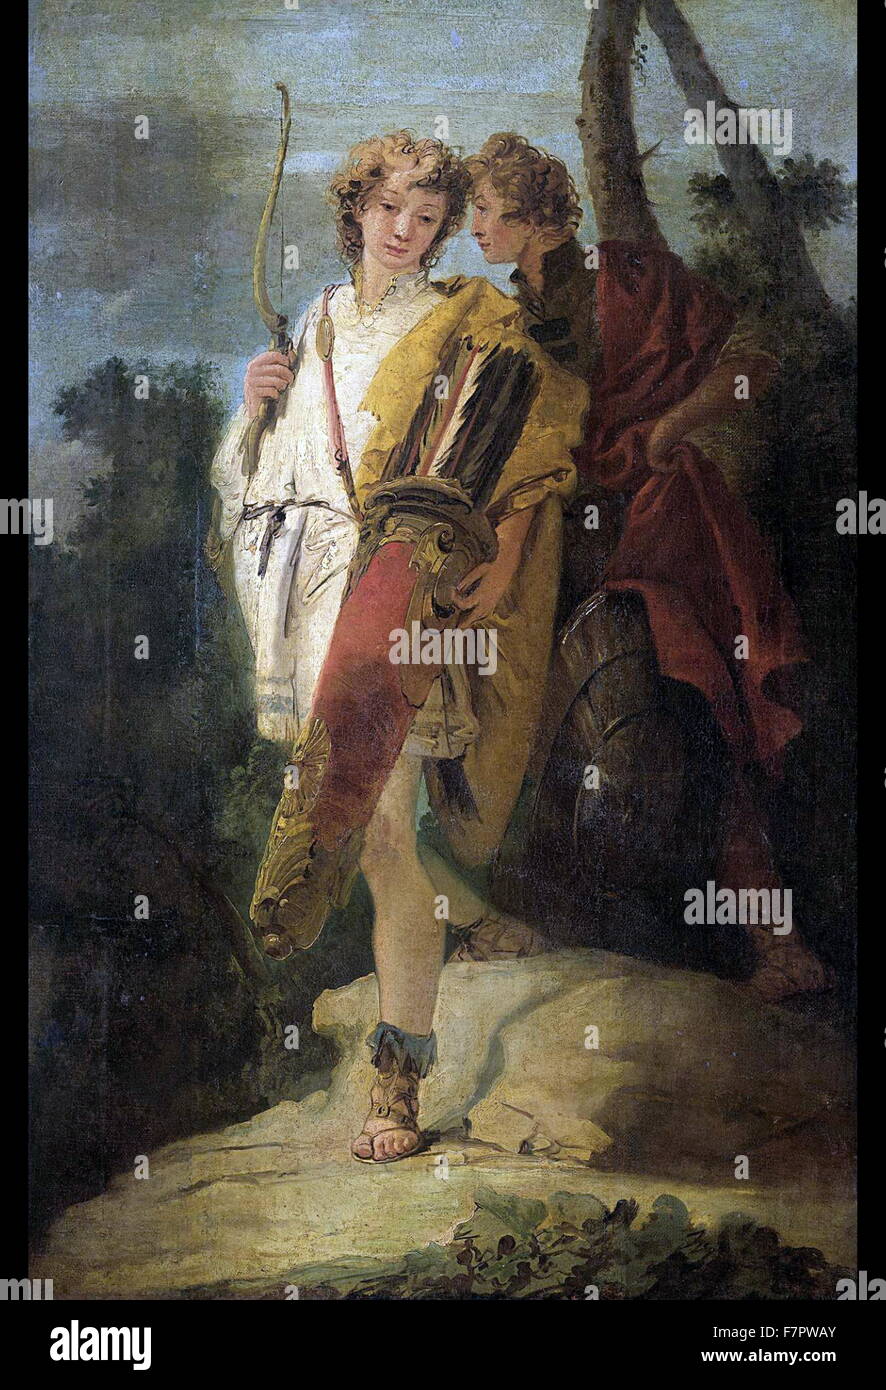 Junger Mann mit Bogen und großer Köcher und seine Begleiter mit einem Schild "(auch bekannt als Telemachus und Mentor) von Giovanni Battista Tiepolo, 1750. Öl auf Leinwand. Stockfoto